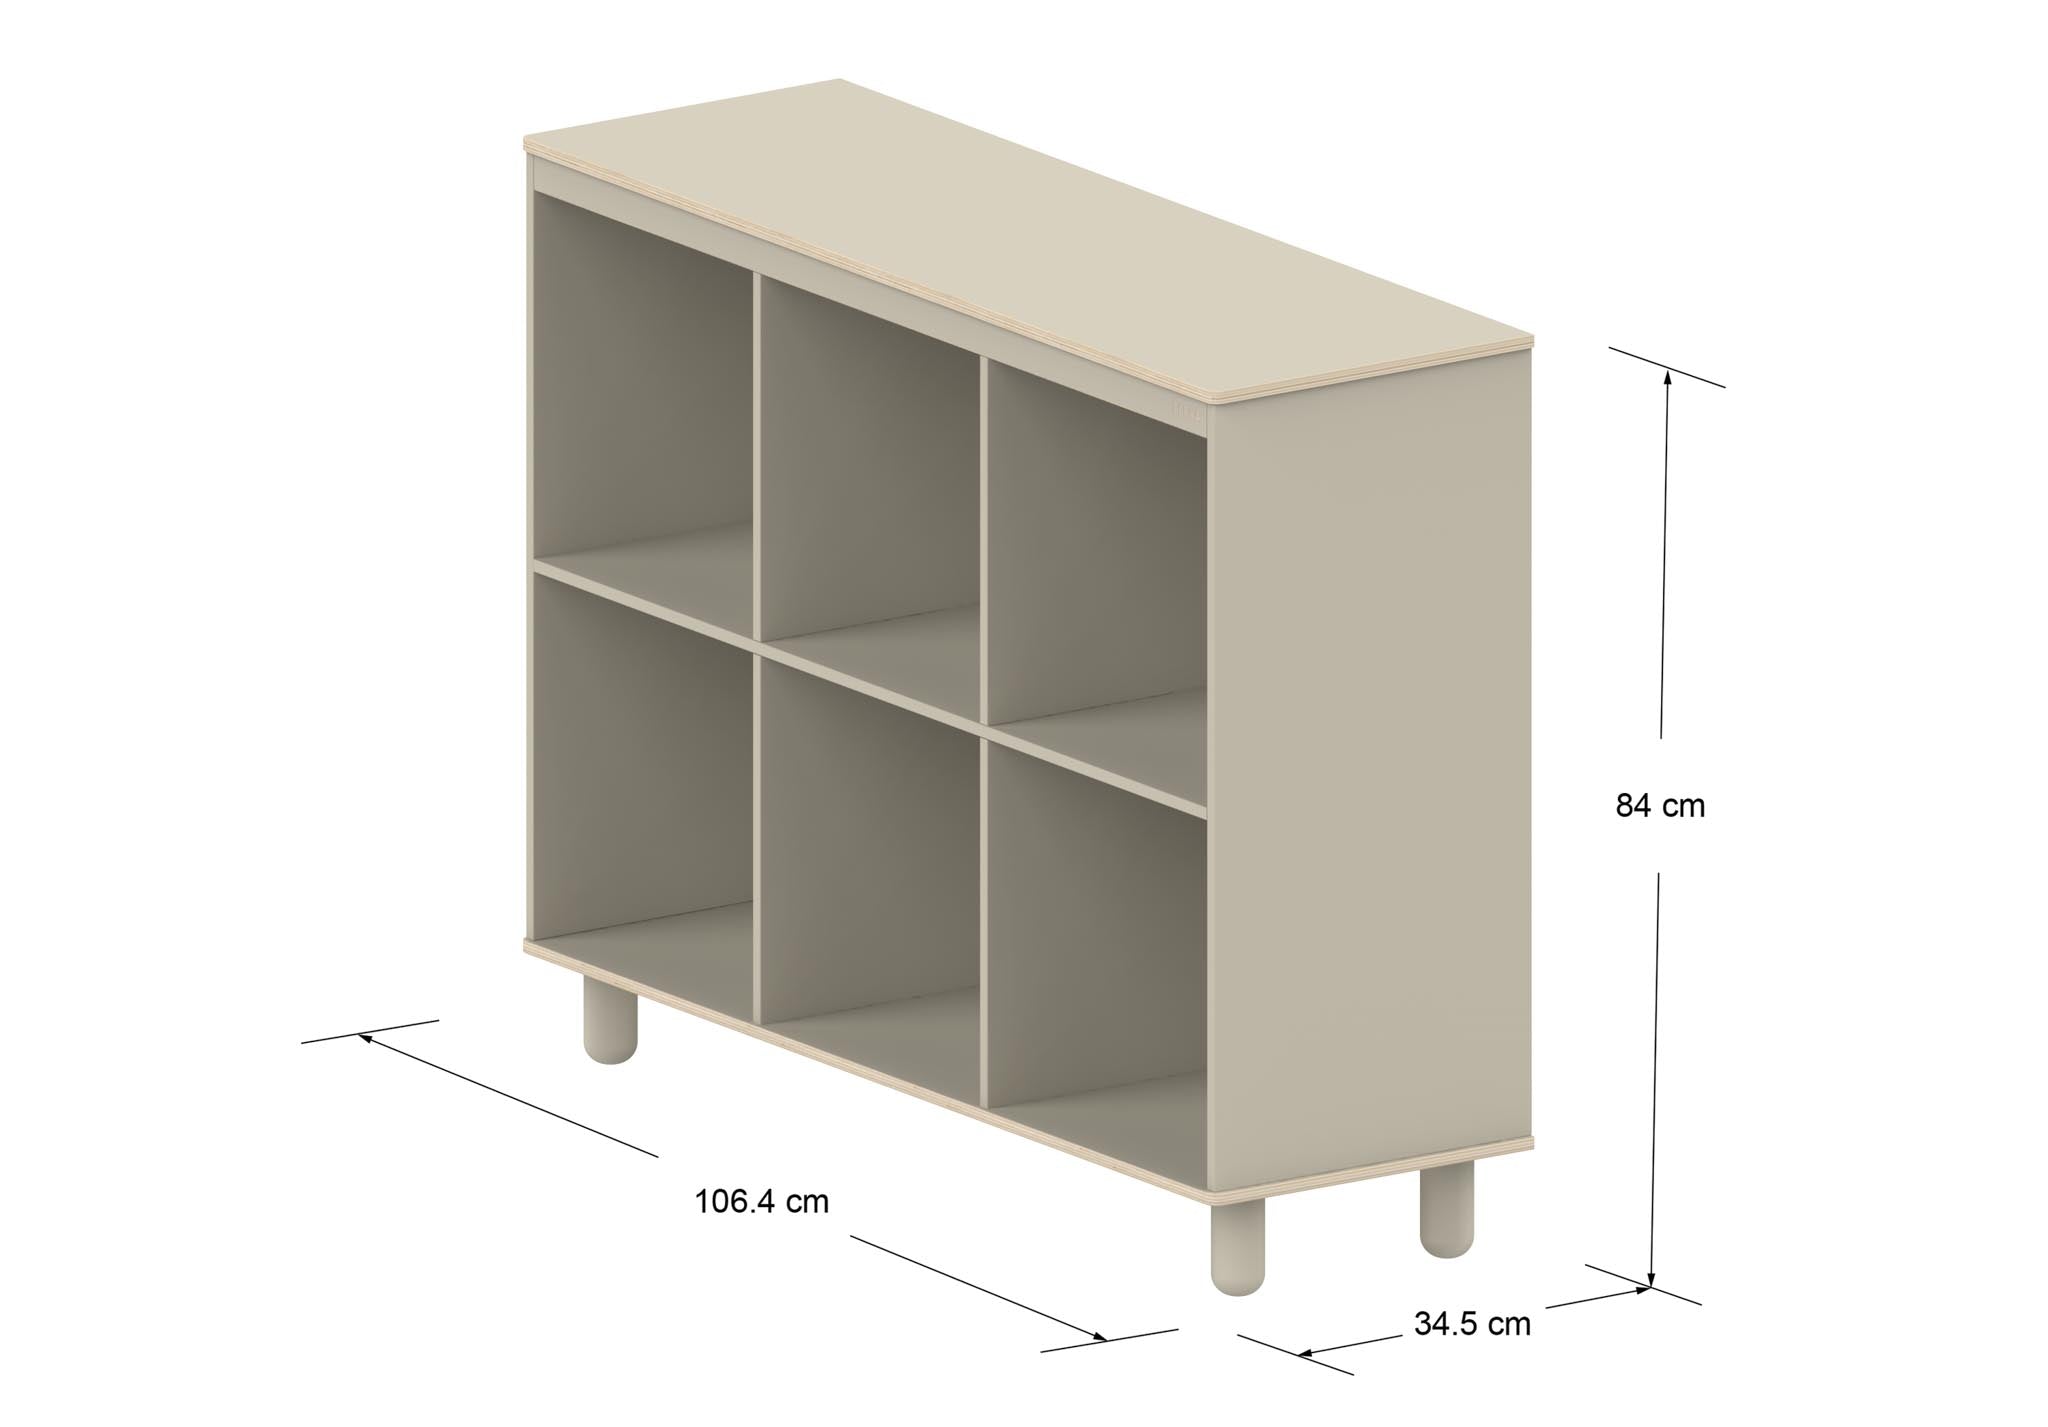 6 Shelf Kallax Storage for 12 X 12 Plastic Storage Containers -  Denmark